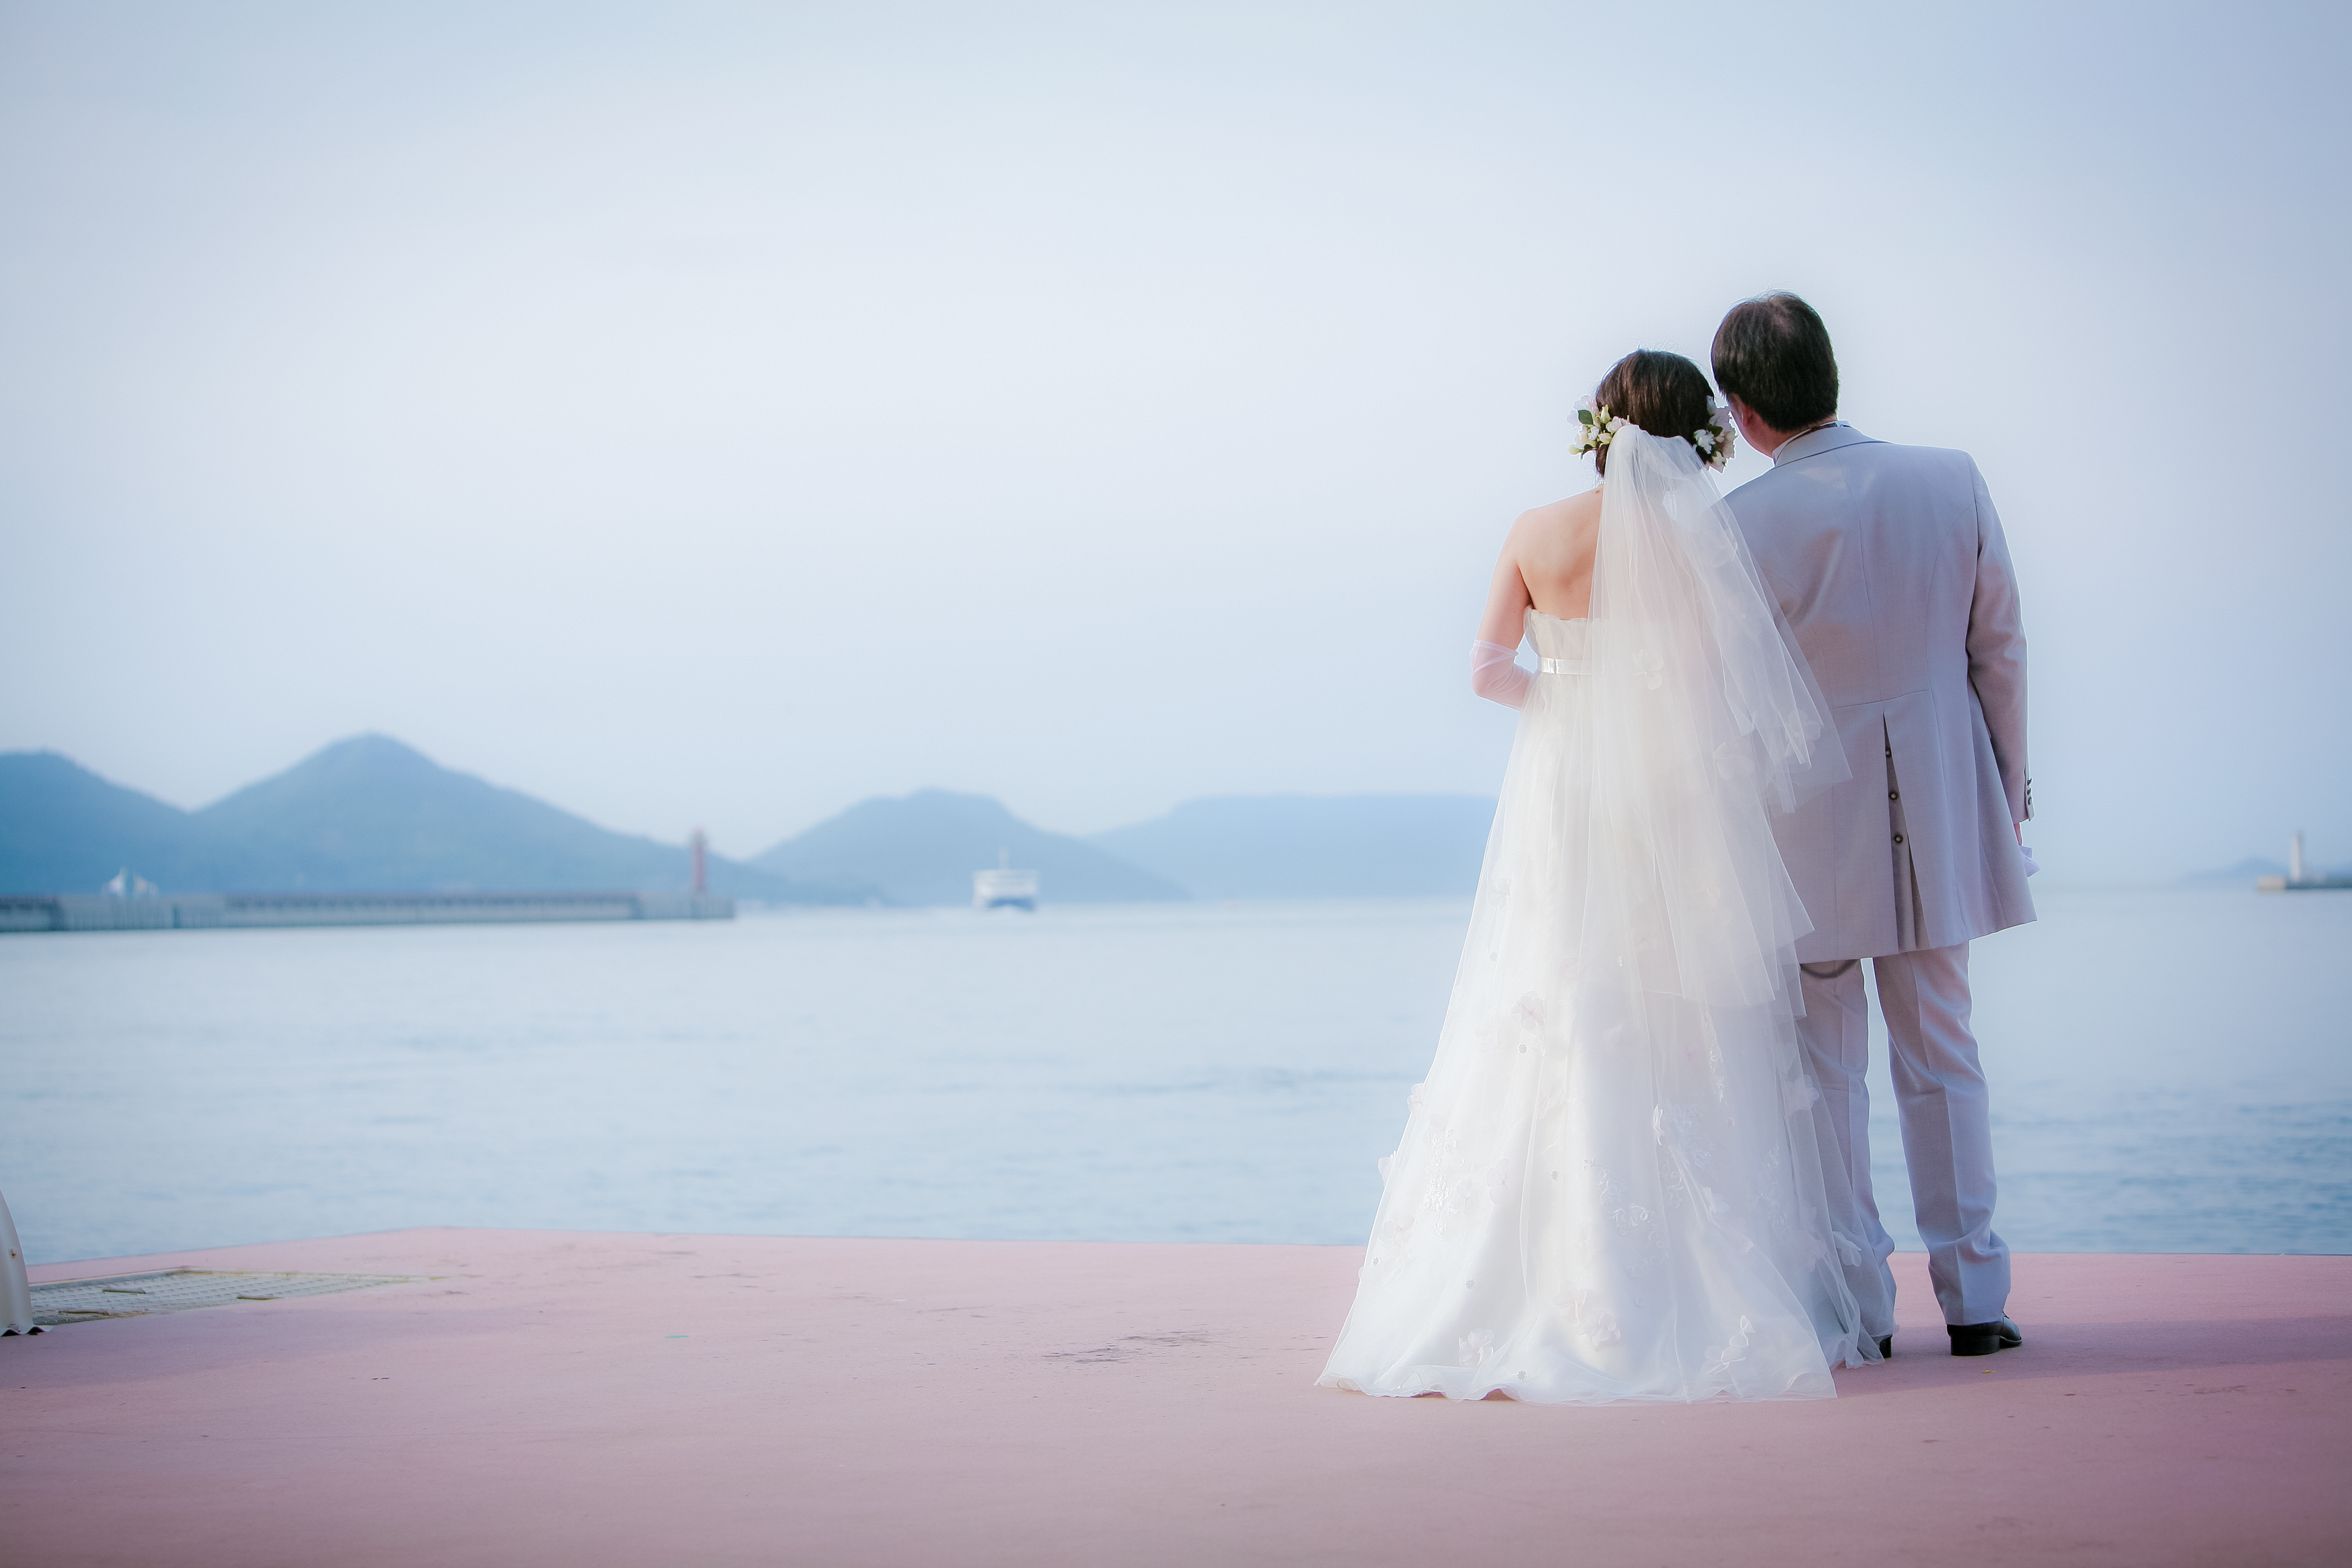 「ふるさとウエディング」「島婚」瀬戸内海の男木島での結婚式